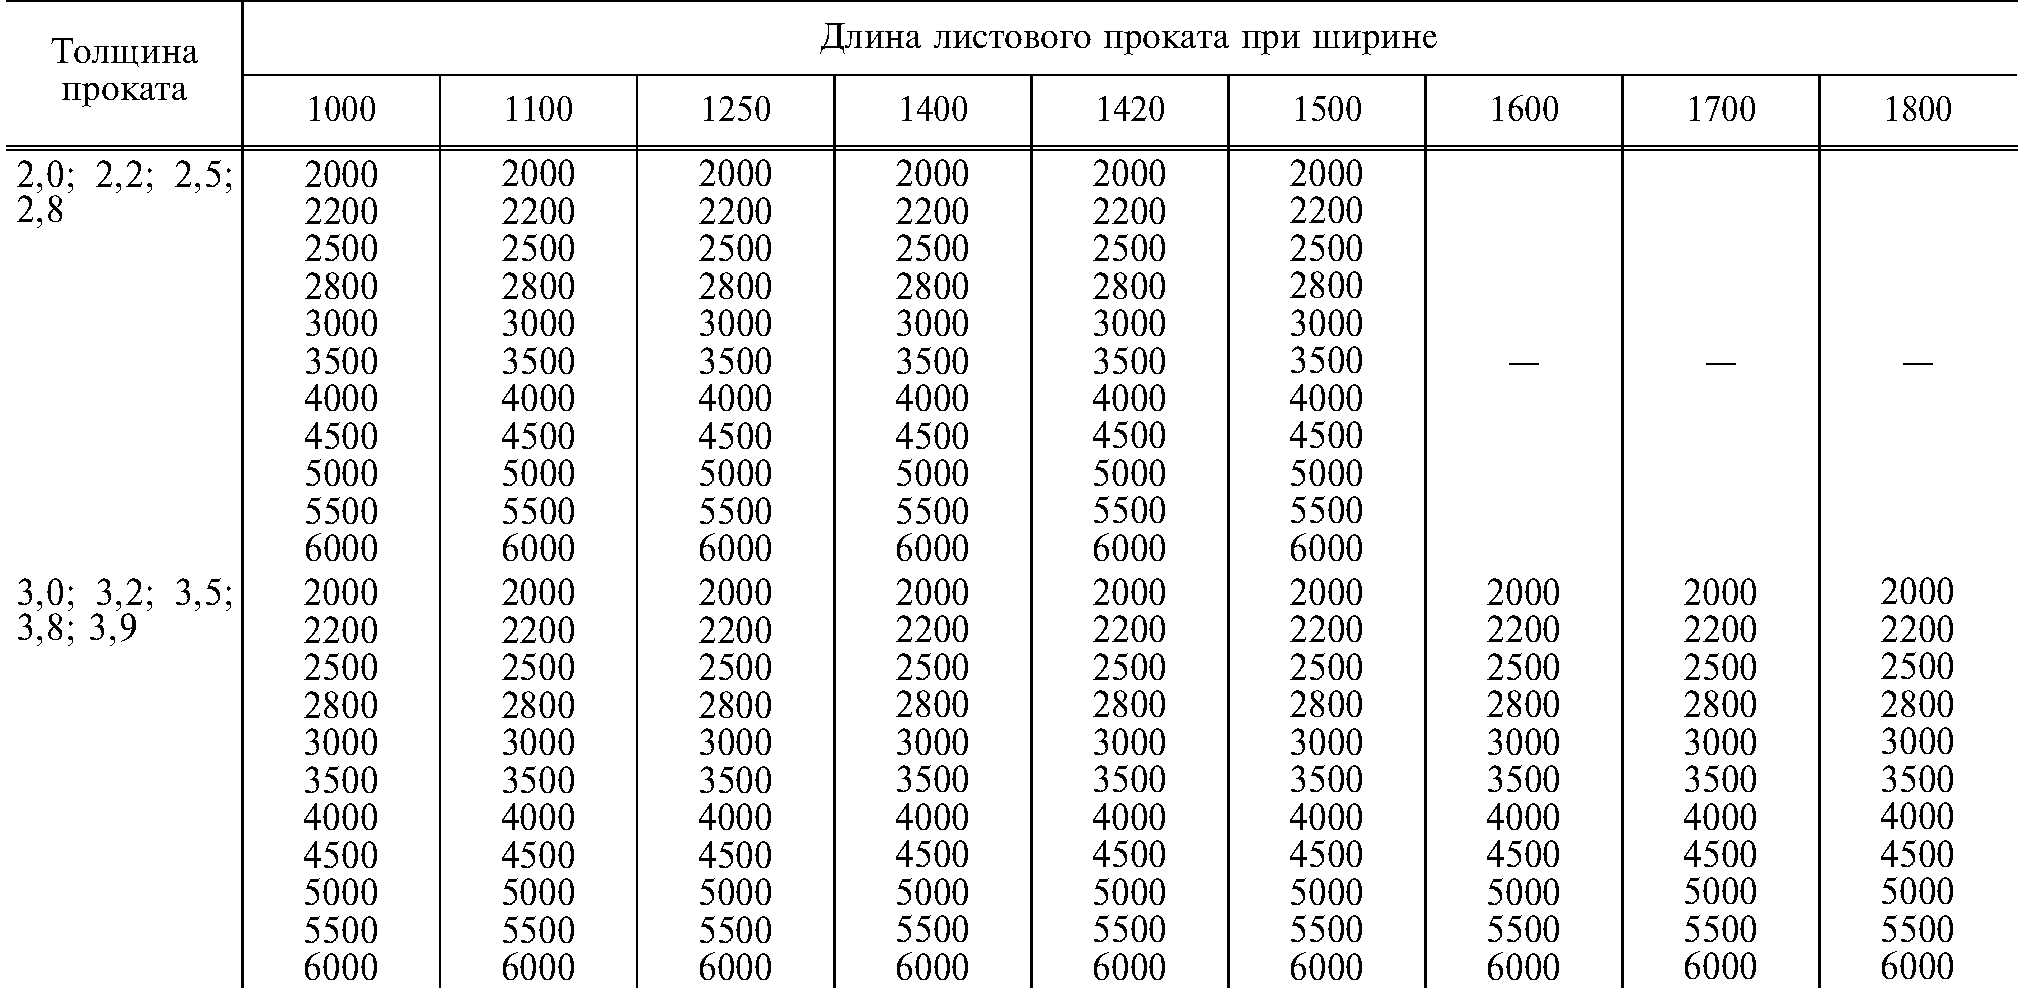 Как посчитать вес металла по размерам: формулы и таблицы шаблонных значений